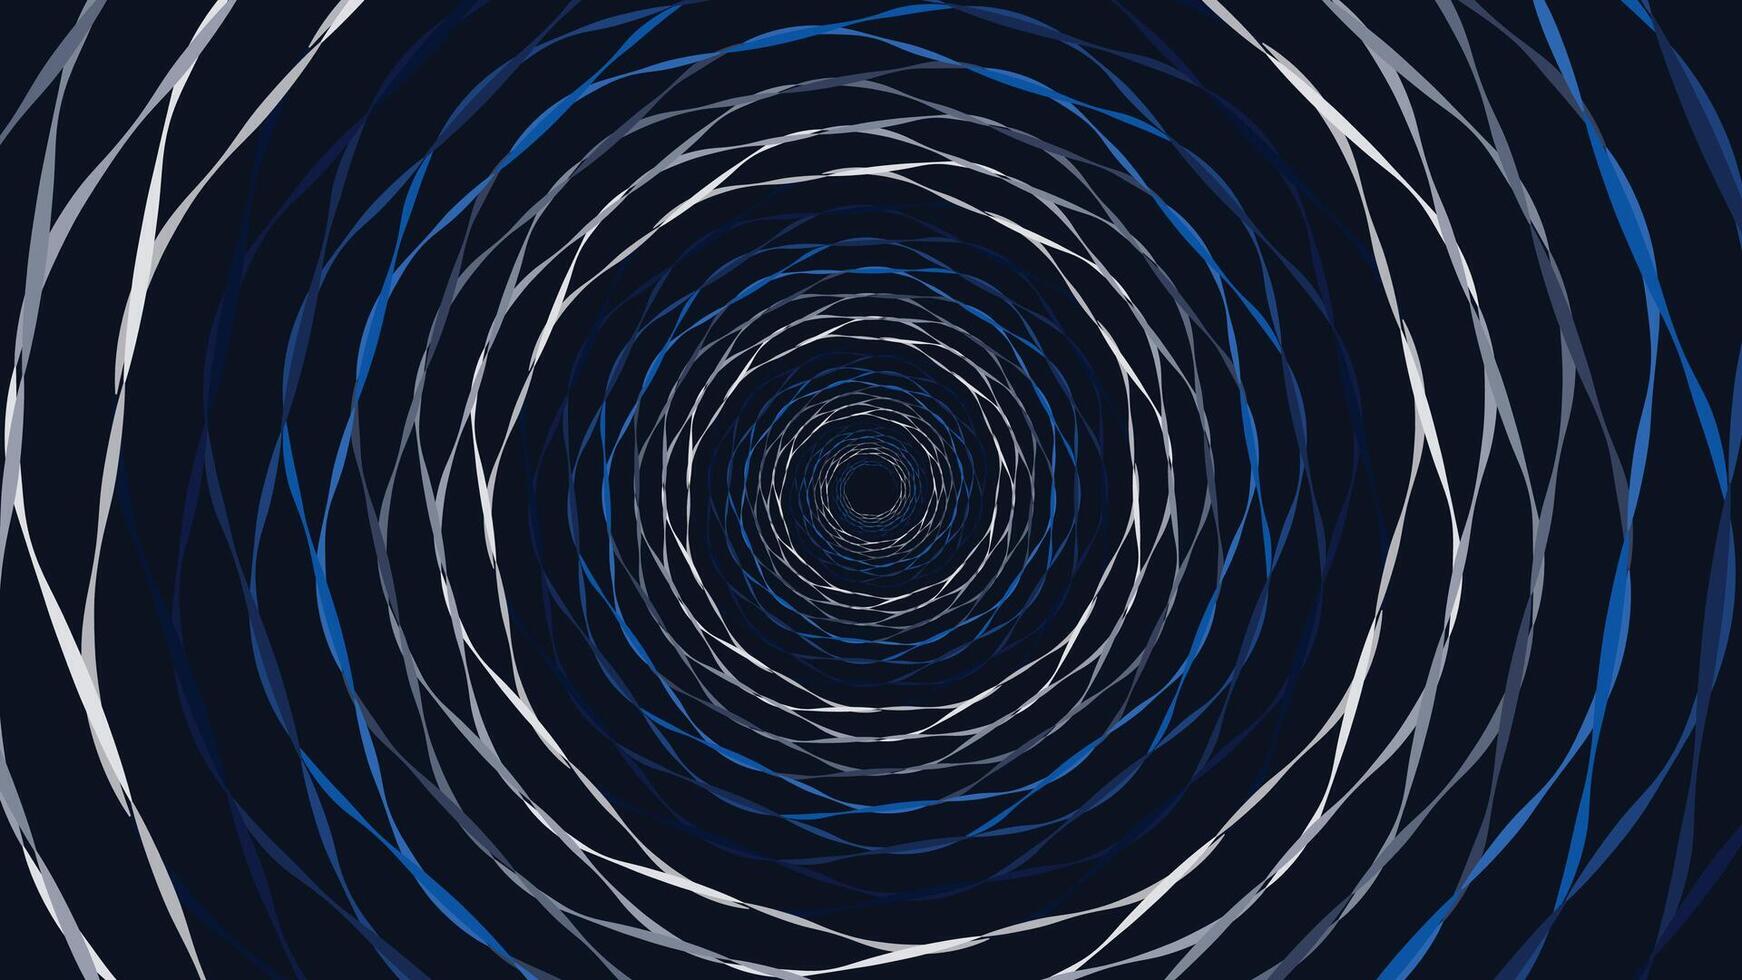 Abstarct spiral vortex style spinning round symbol background in dark blue color. vector